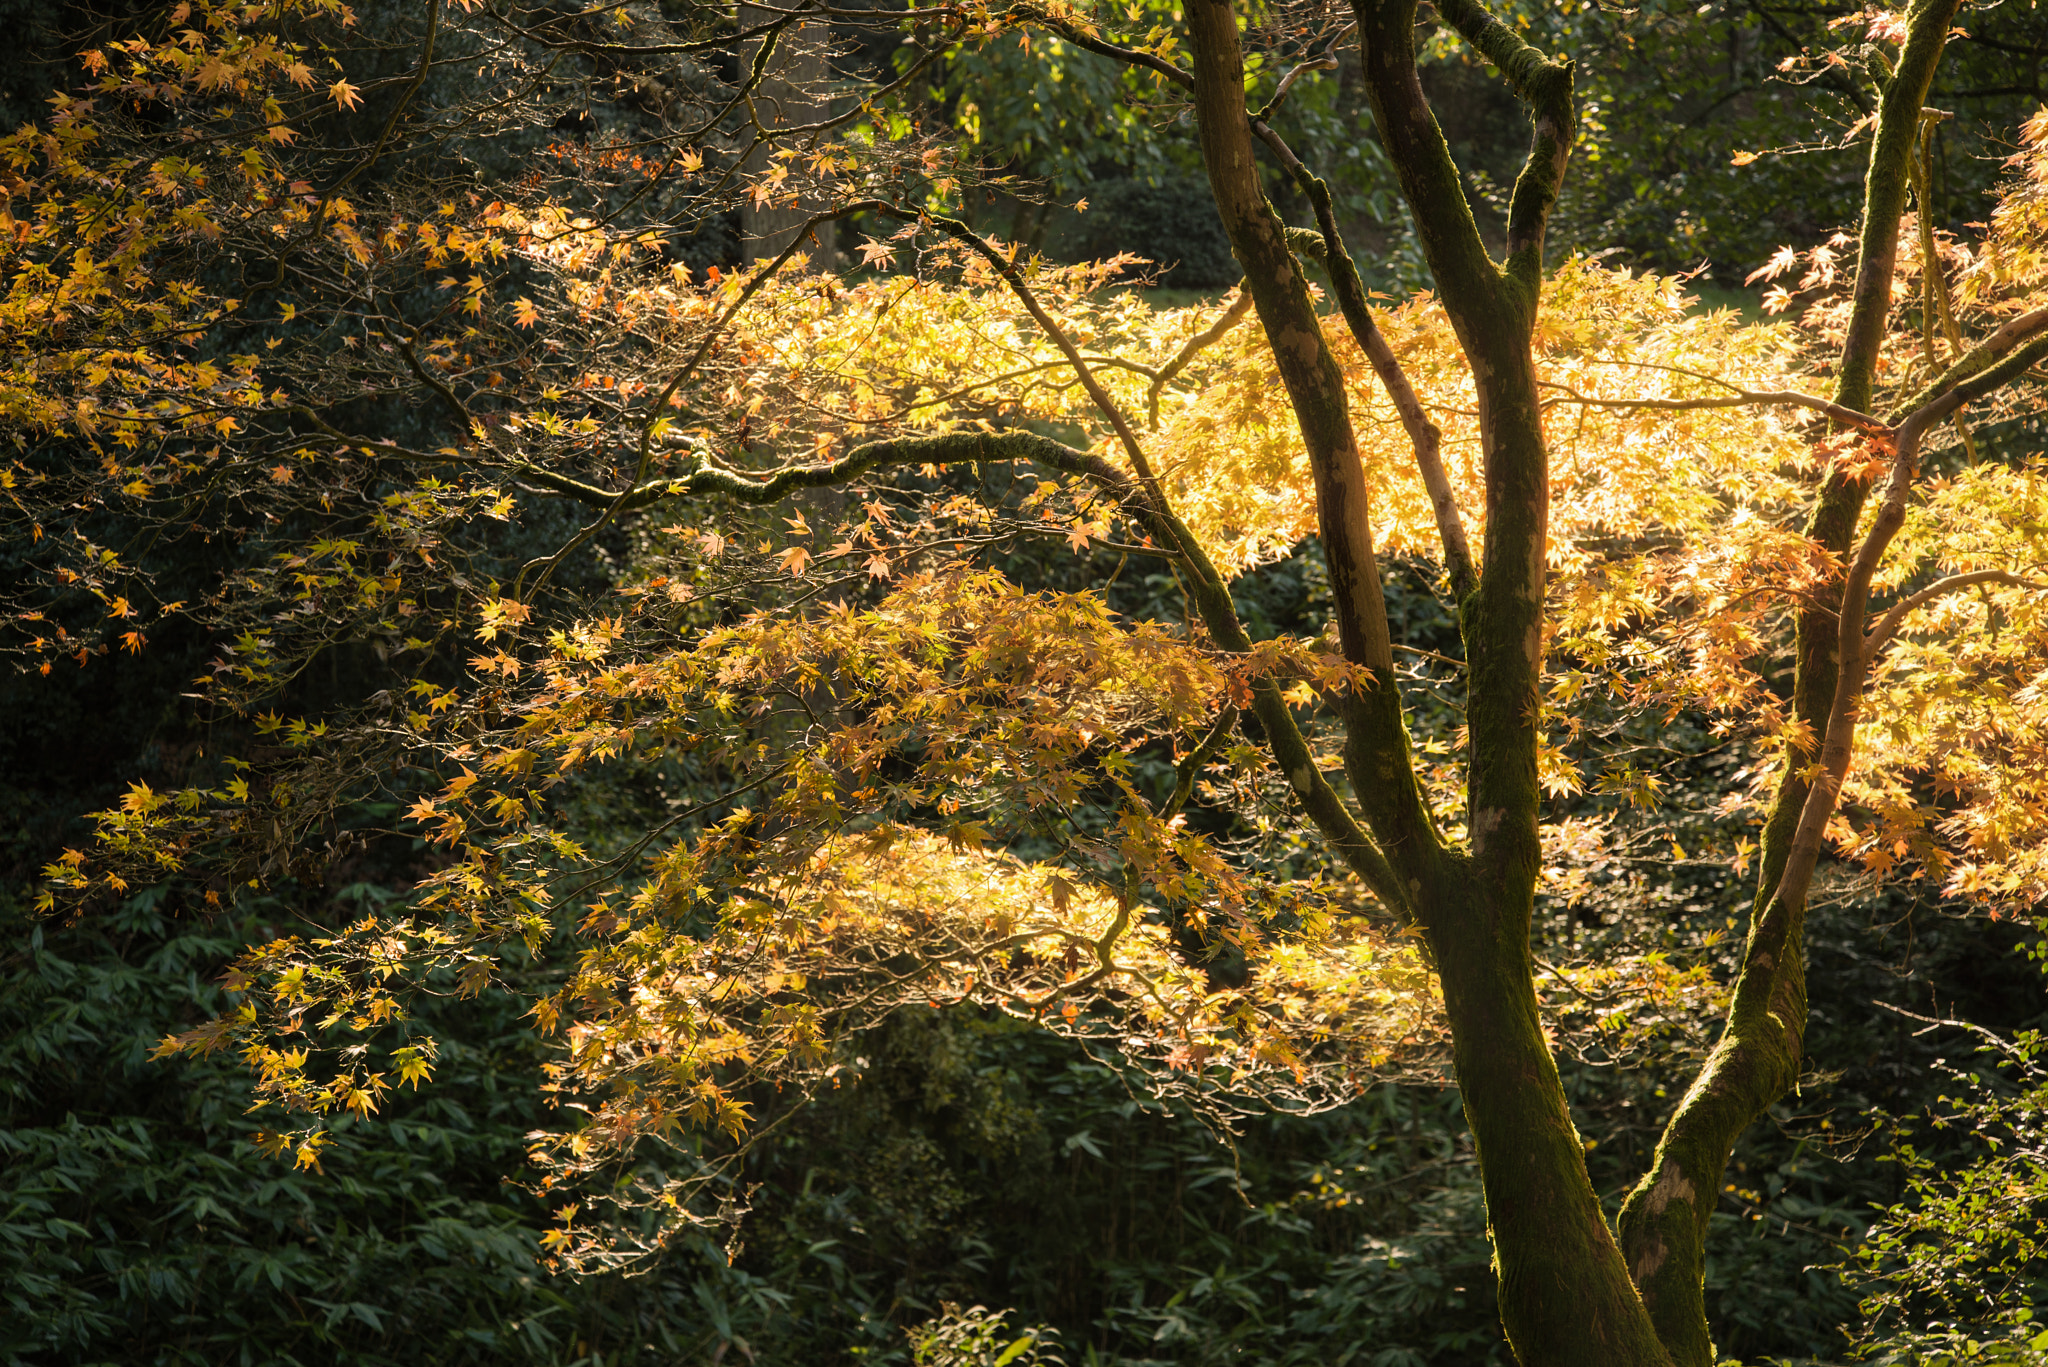 Nikon D600 + AF Zoom-Nikkor 35-135mm f/3.5-4.5 N sample photo. Stunning vibrant autumn landscape of forest photography